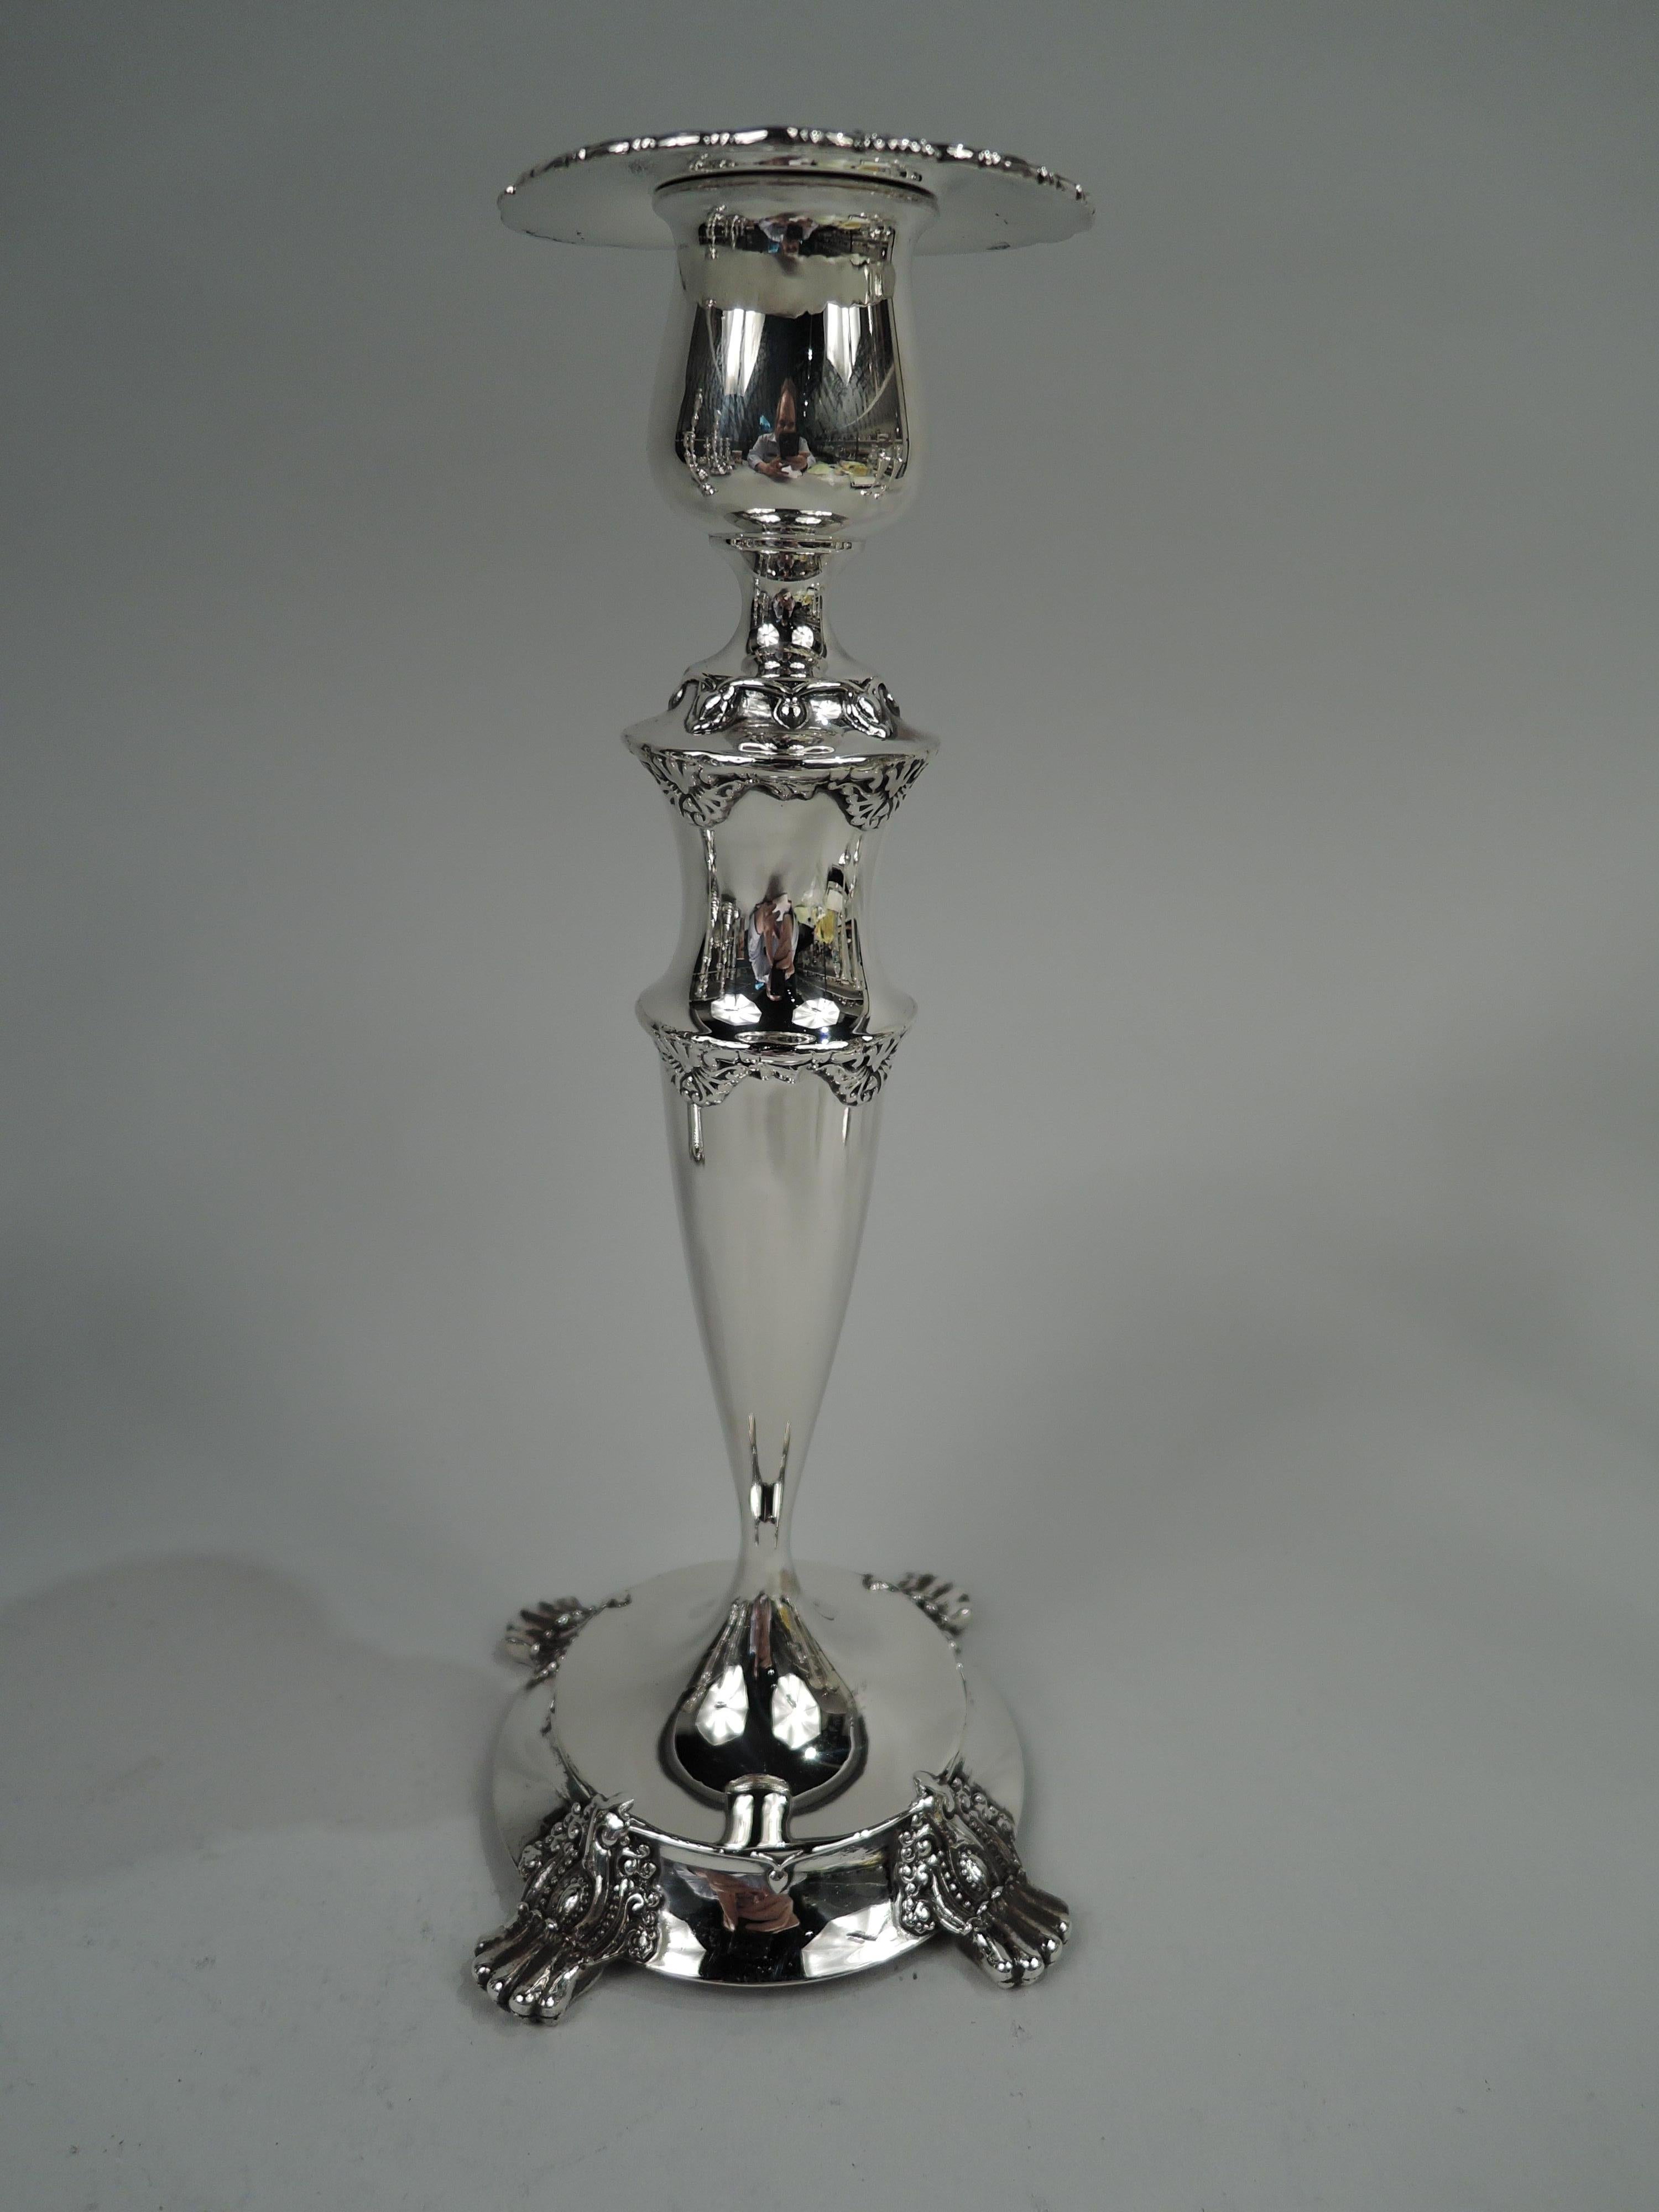 Paire de chandeliers classiques en argent sterling de l'époque édouardienne. Fabriqué par Tiffany & Co. à New York. Chacune : Socle en forme d'urne avec bobèche amovible sur bobine et tige ovoïde ; pied surélevé avec 4 supports de pattes en rouleau